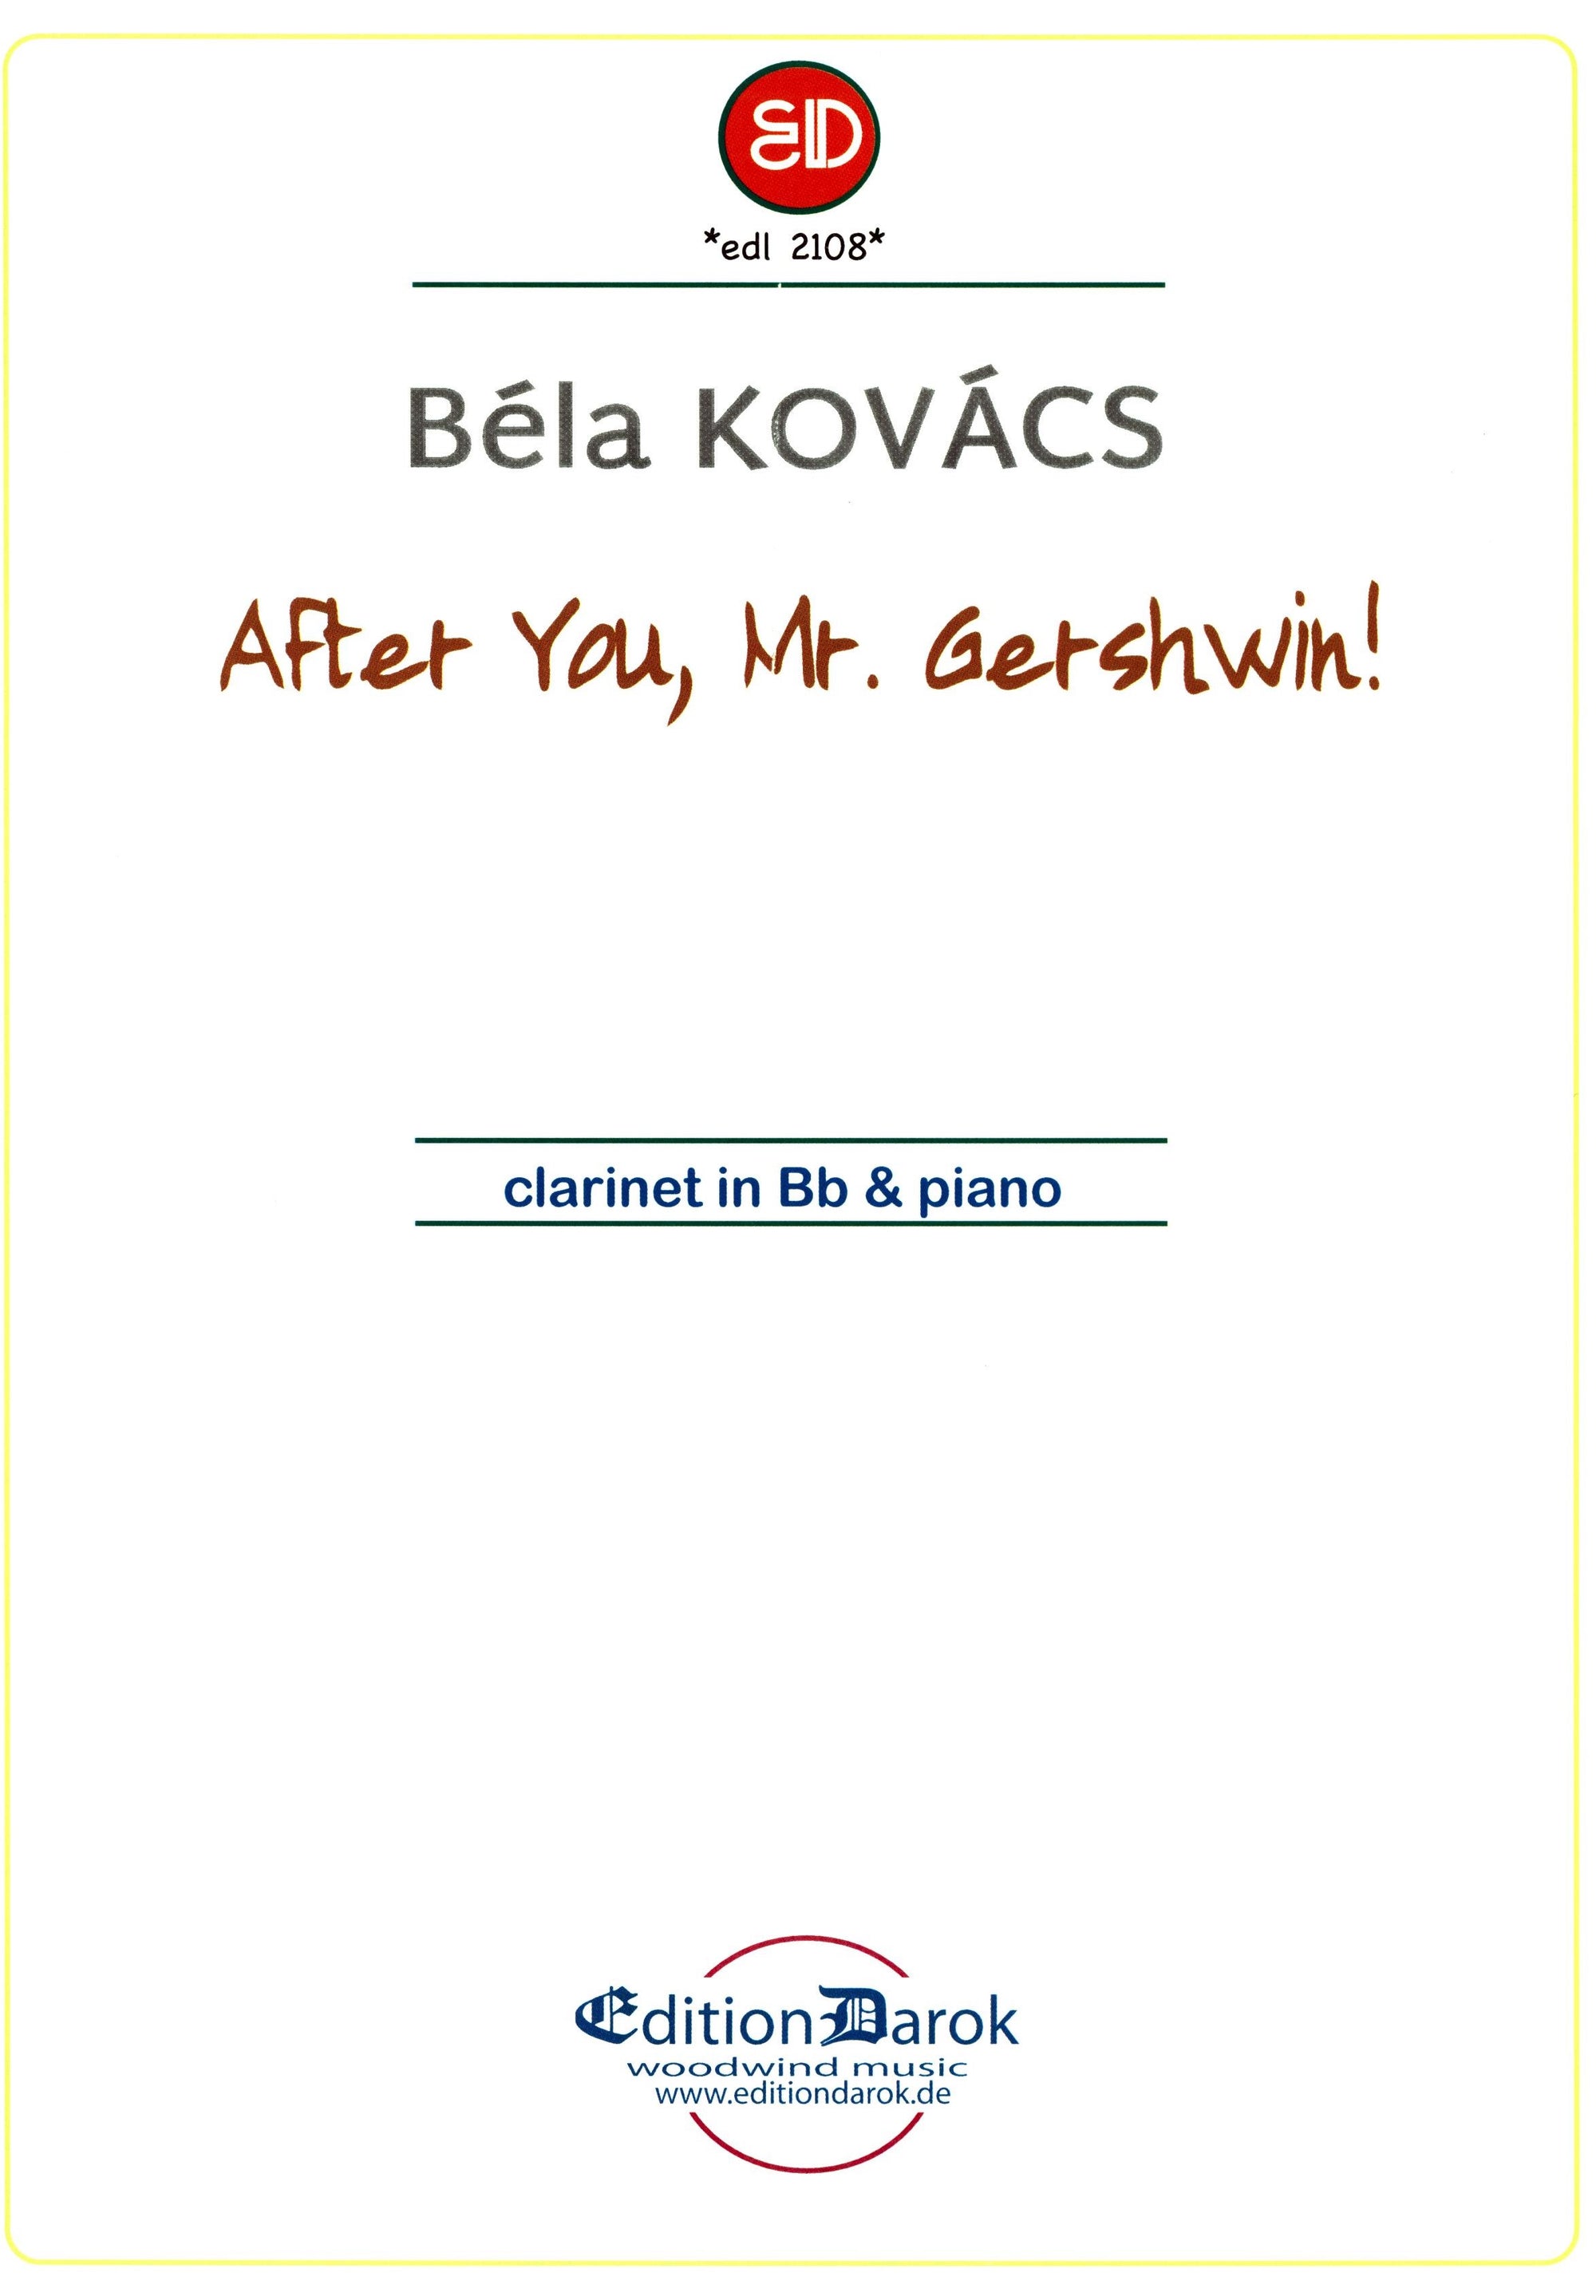 Kovács: After you, Mr. Gershwin!